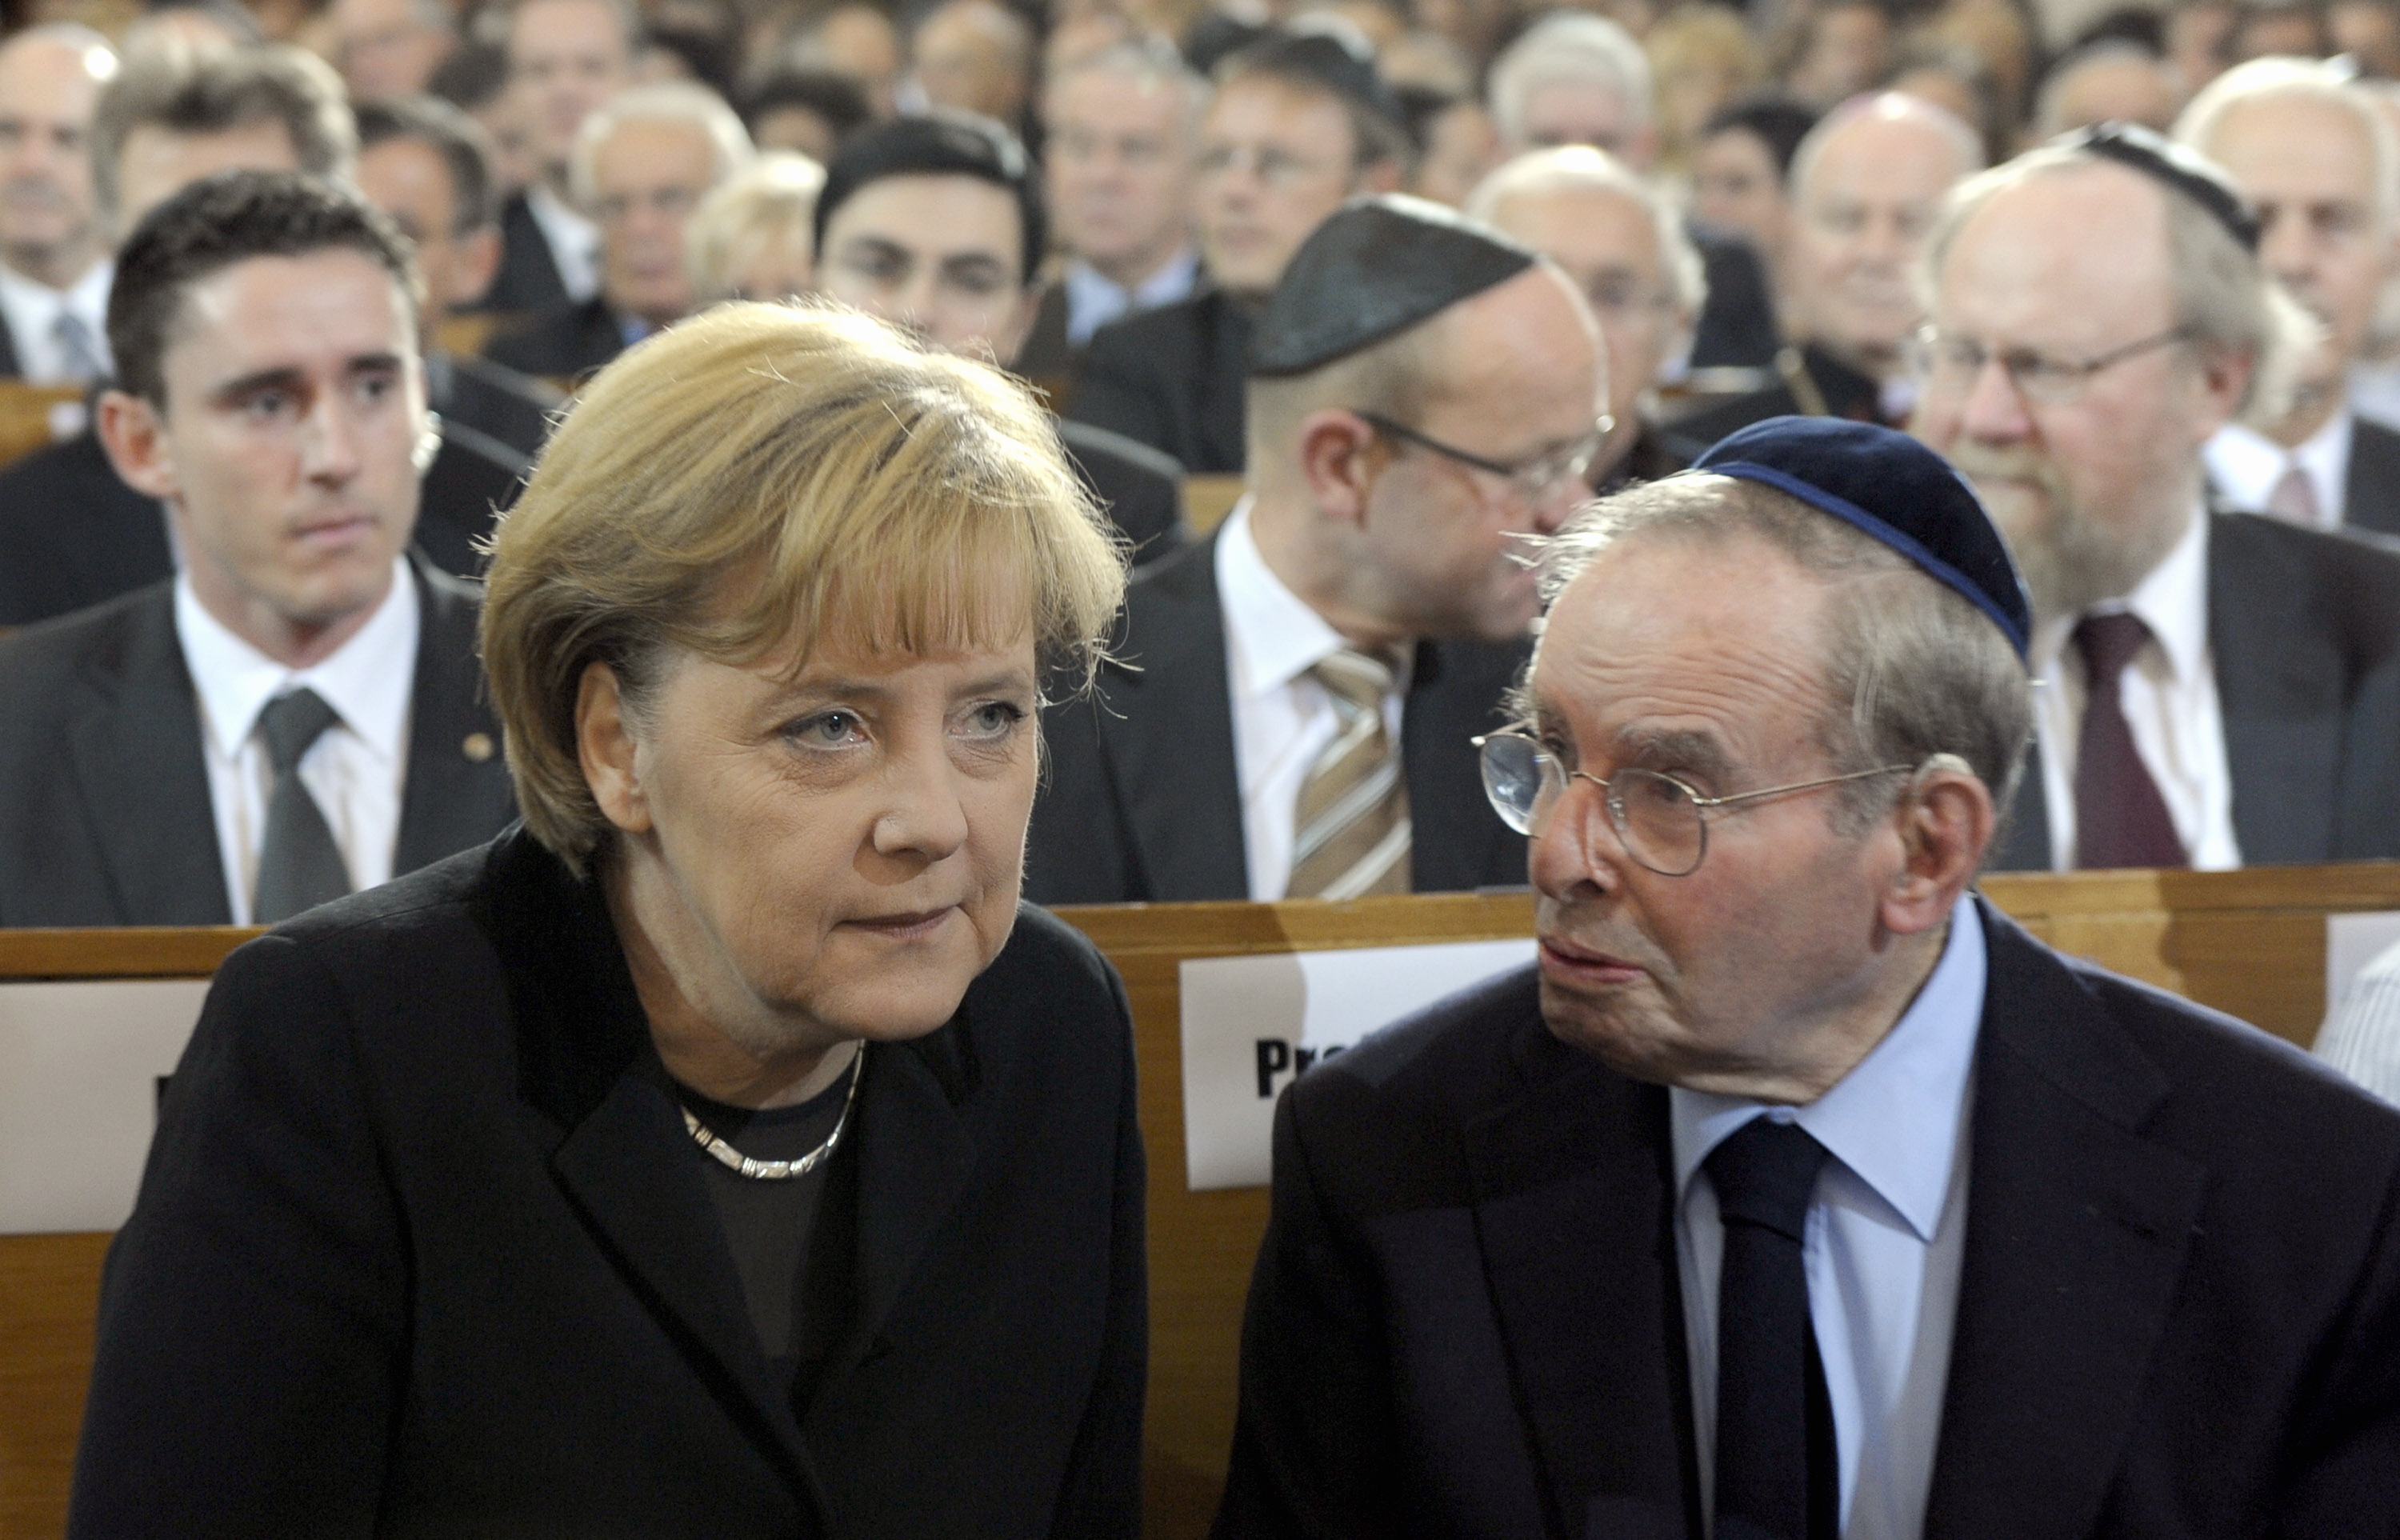 Angela Merkel Német Kancellár Ernst Cramer a holokauszt túlélőjével beszélget a  Rykestrasse-i zsinagógában rendezett megemlékezésen, Berlinben